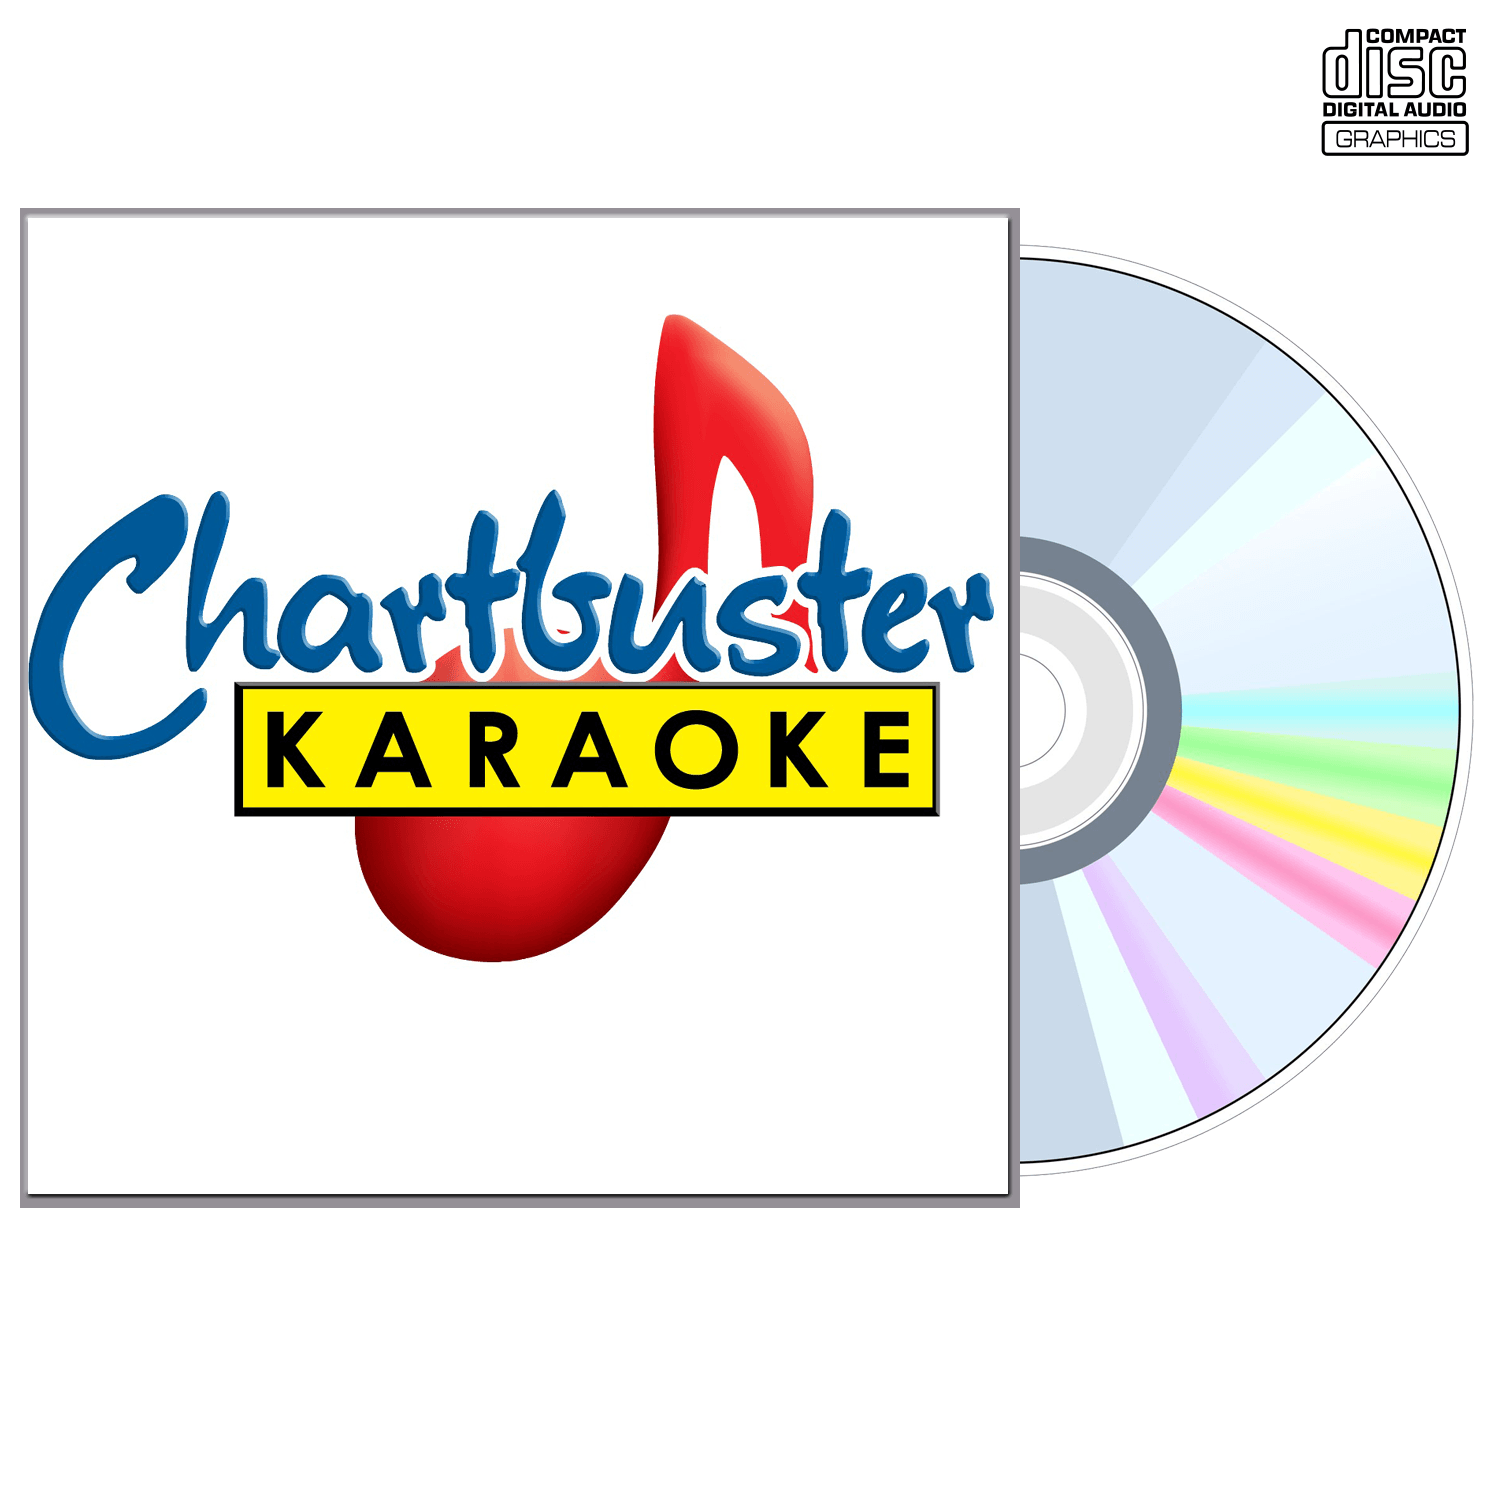 Atlanta Rhythm Section - CD+G - Chartbuster Karaoke - Karaoke Home Entertainment